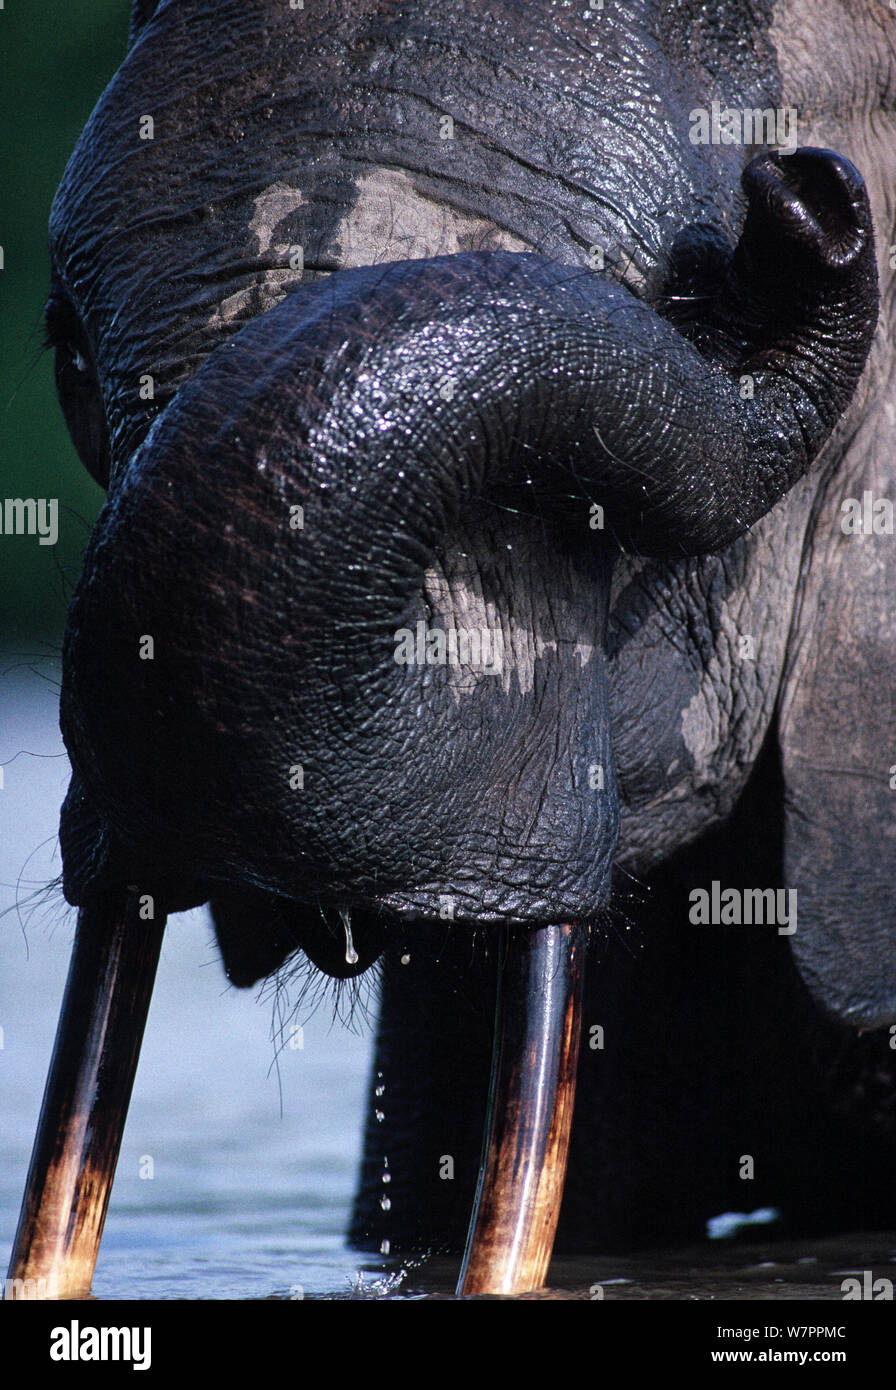 Afrikanischer Elefant (Loxodonta africana) im Fluss reiben Auge mit trunk, Garamba National Park in der Demokratischen Republik Kongo. Stockfoto